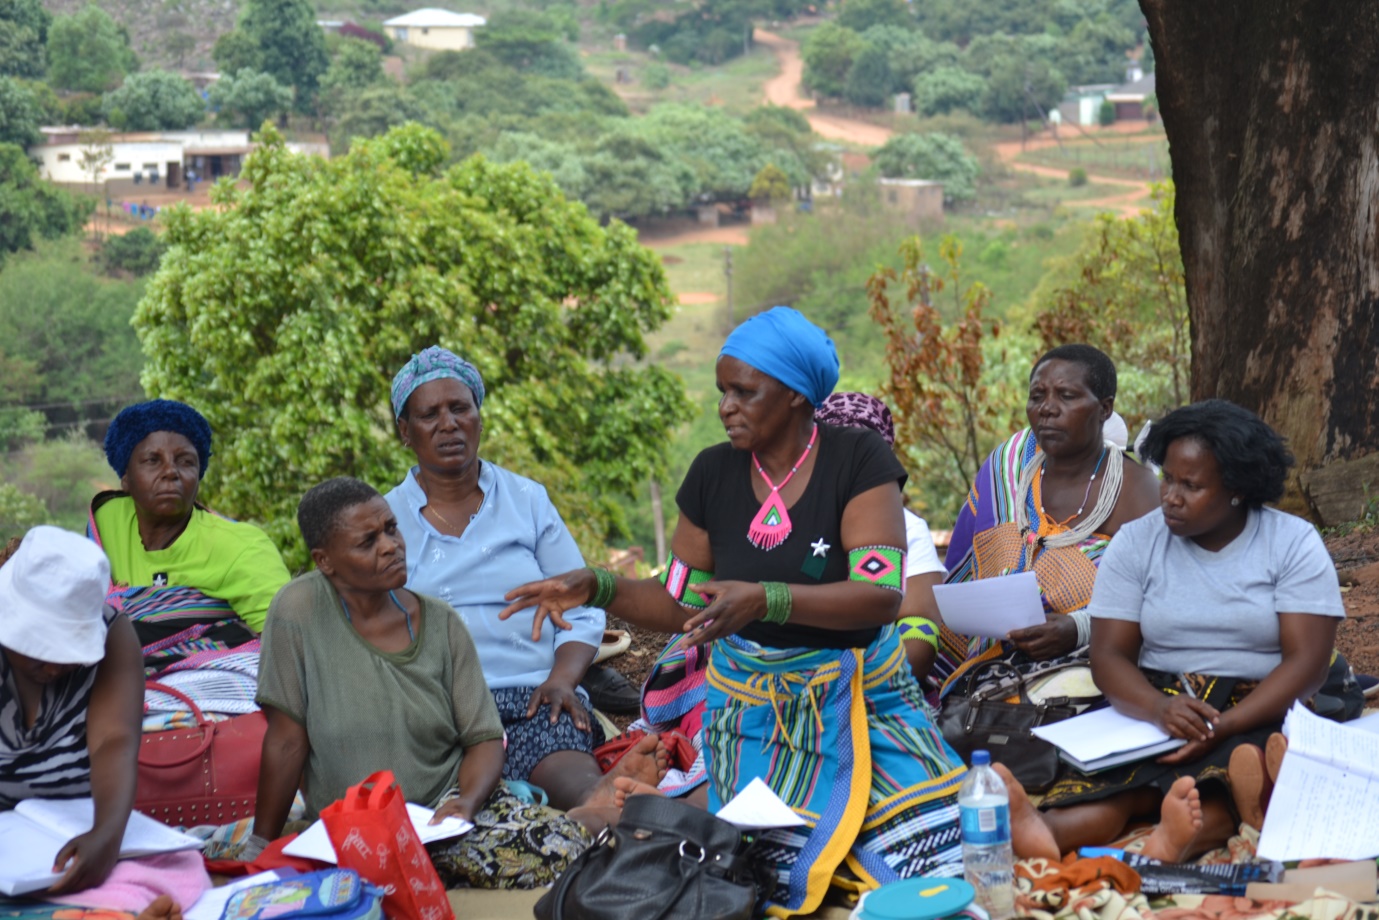 Women organizing as Dzomo la Mupo. Photo courtesy of Mphathe Makaulele.